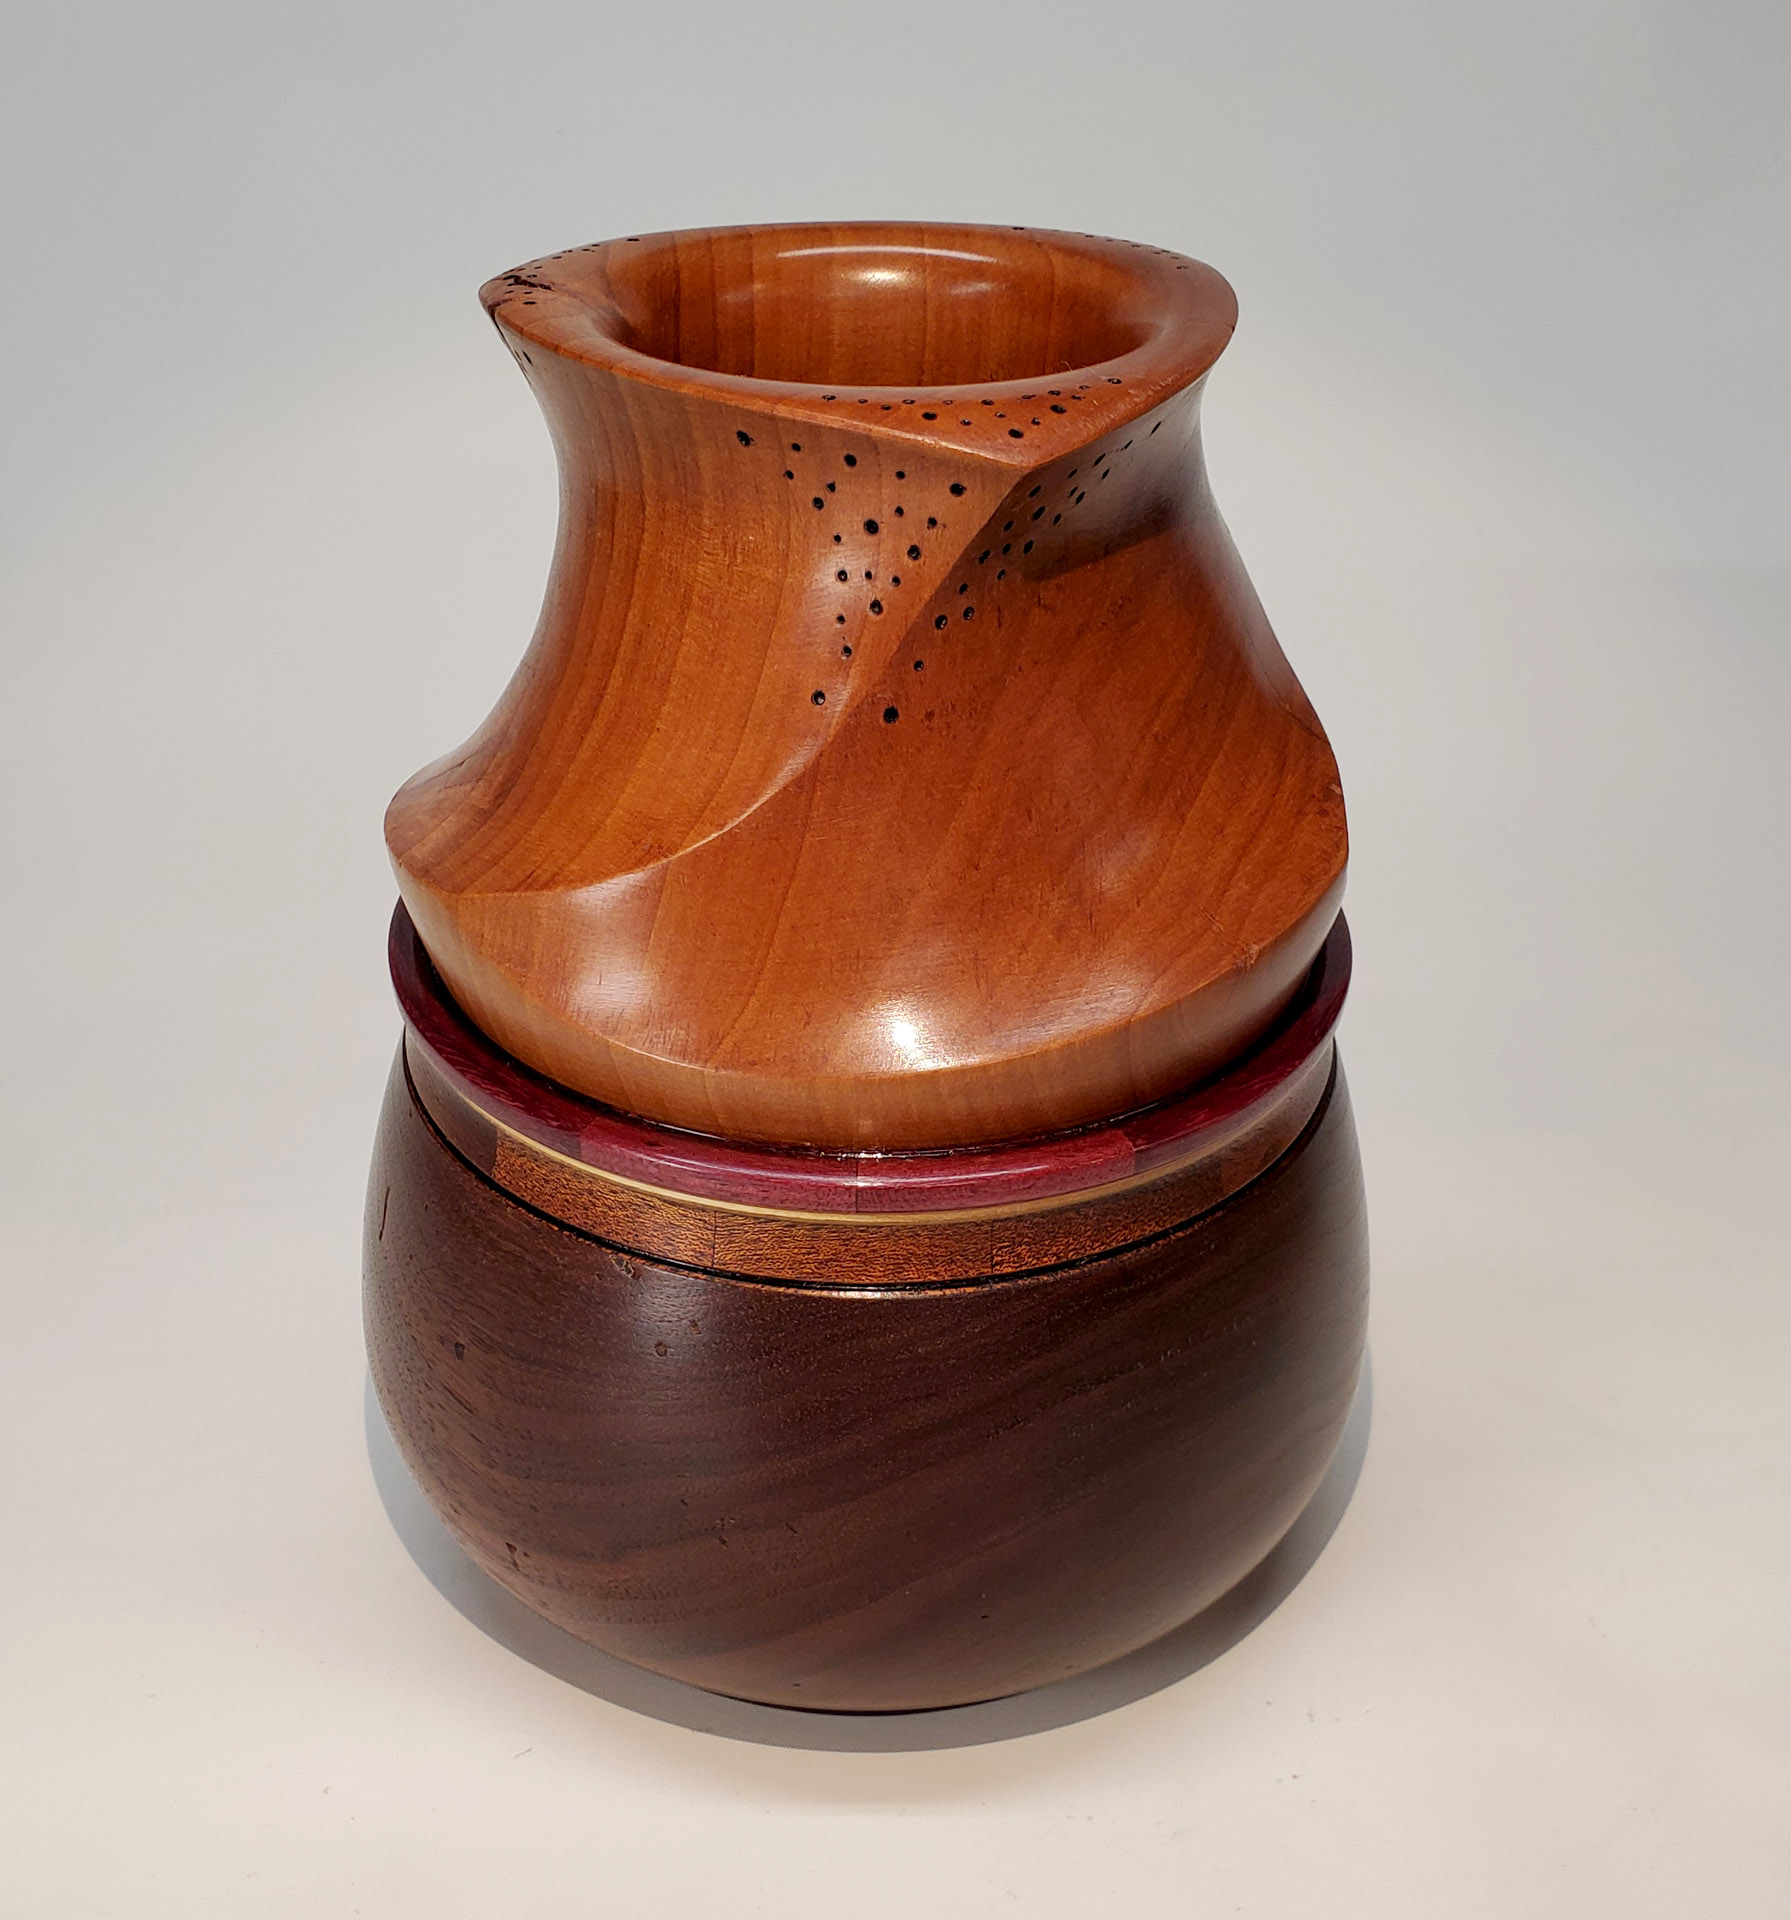 Twisted Vase on Bowl